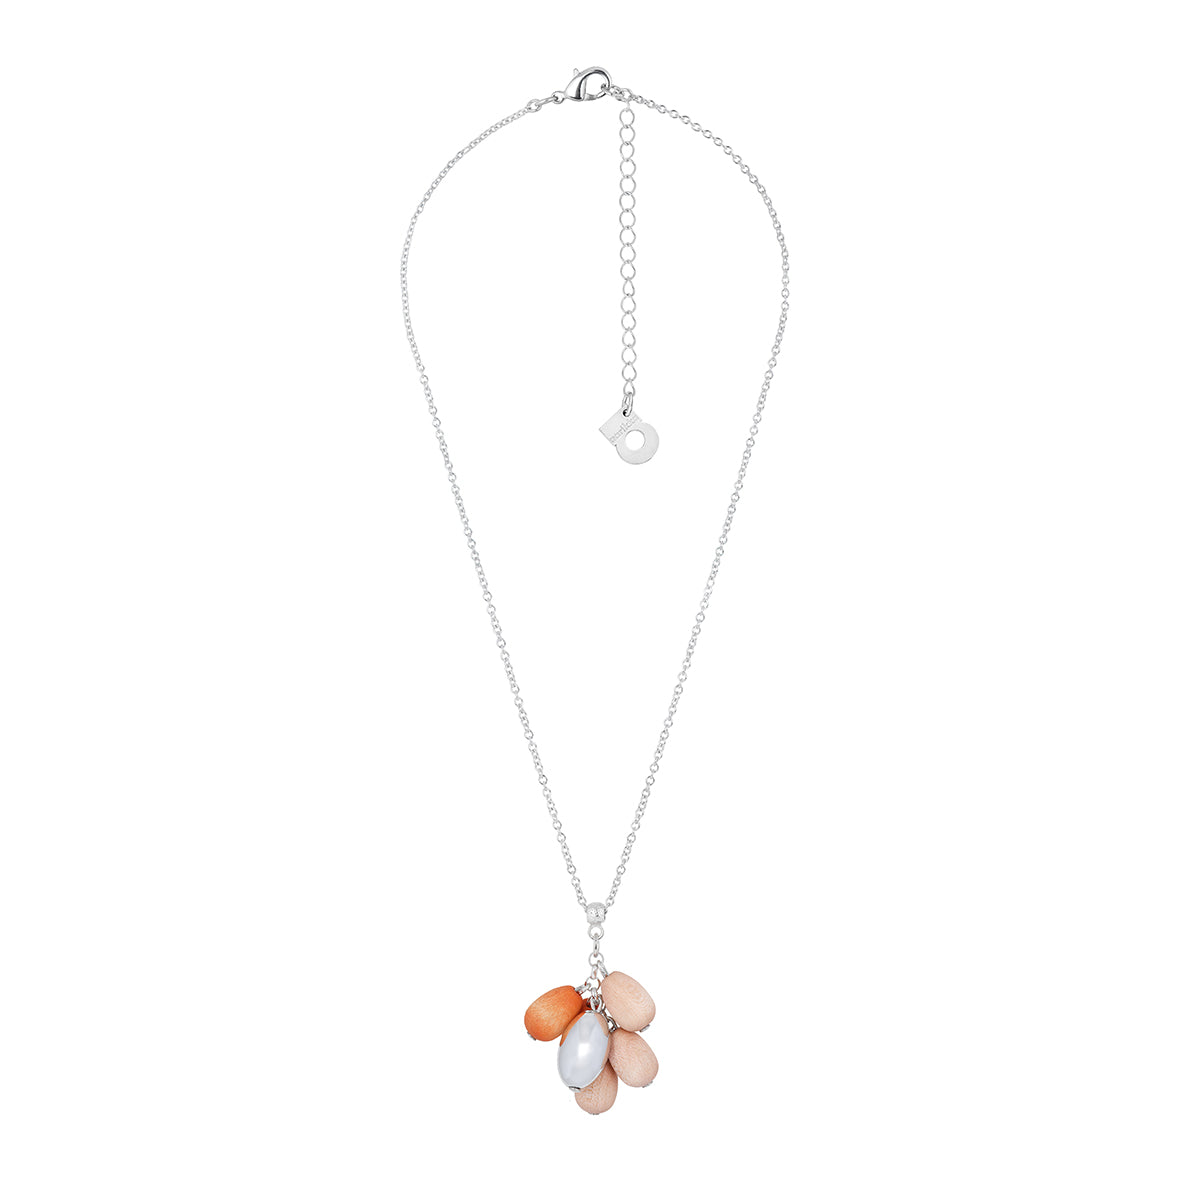 Papaija necklace, orange and pink